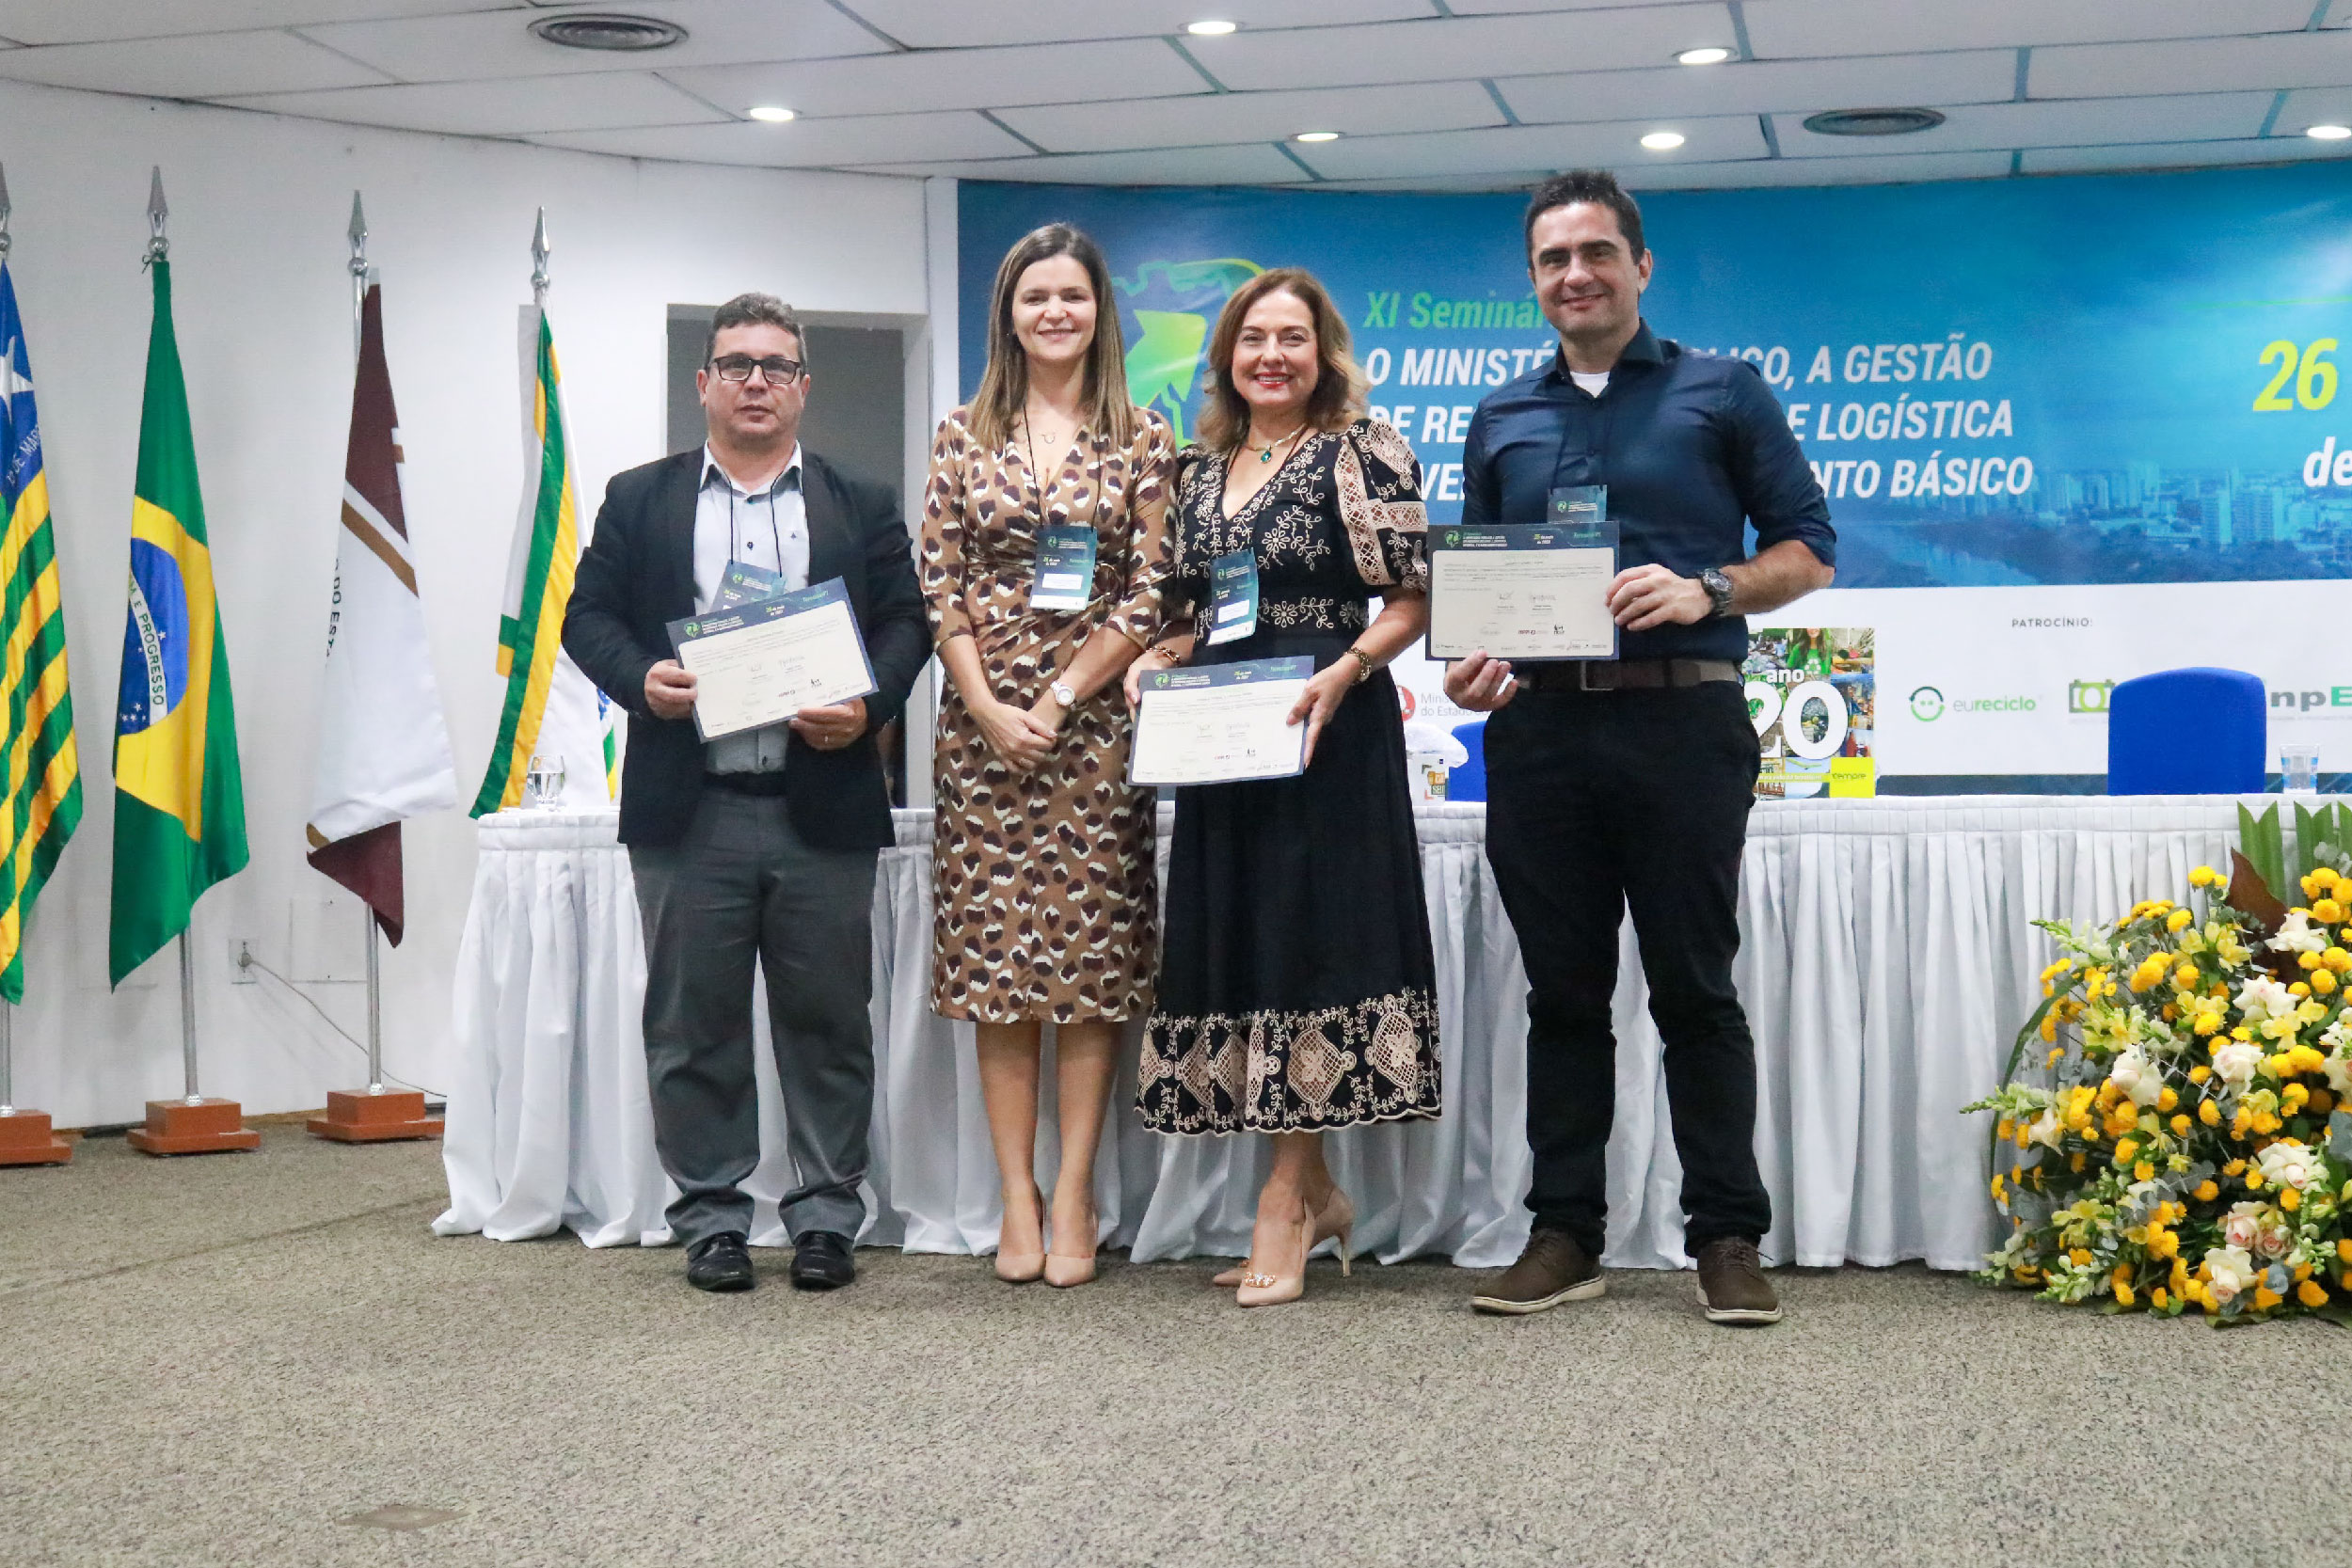 Foto mostra dois homens e duas mulheres de pé, em frente a uma mesa segurando certificados. No canto esquerda imagem há bandeiras do Brasil e do Piauí. No fundo, um banner do evento na cor azul.